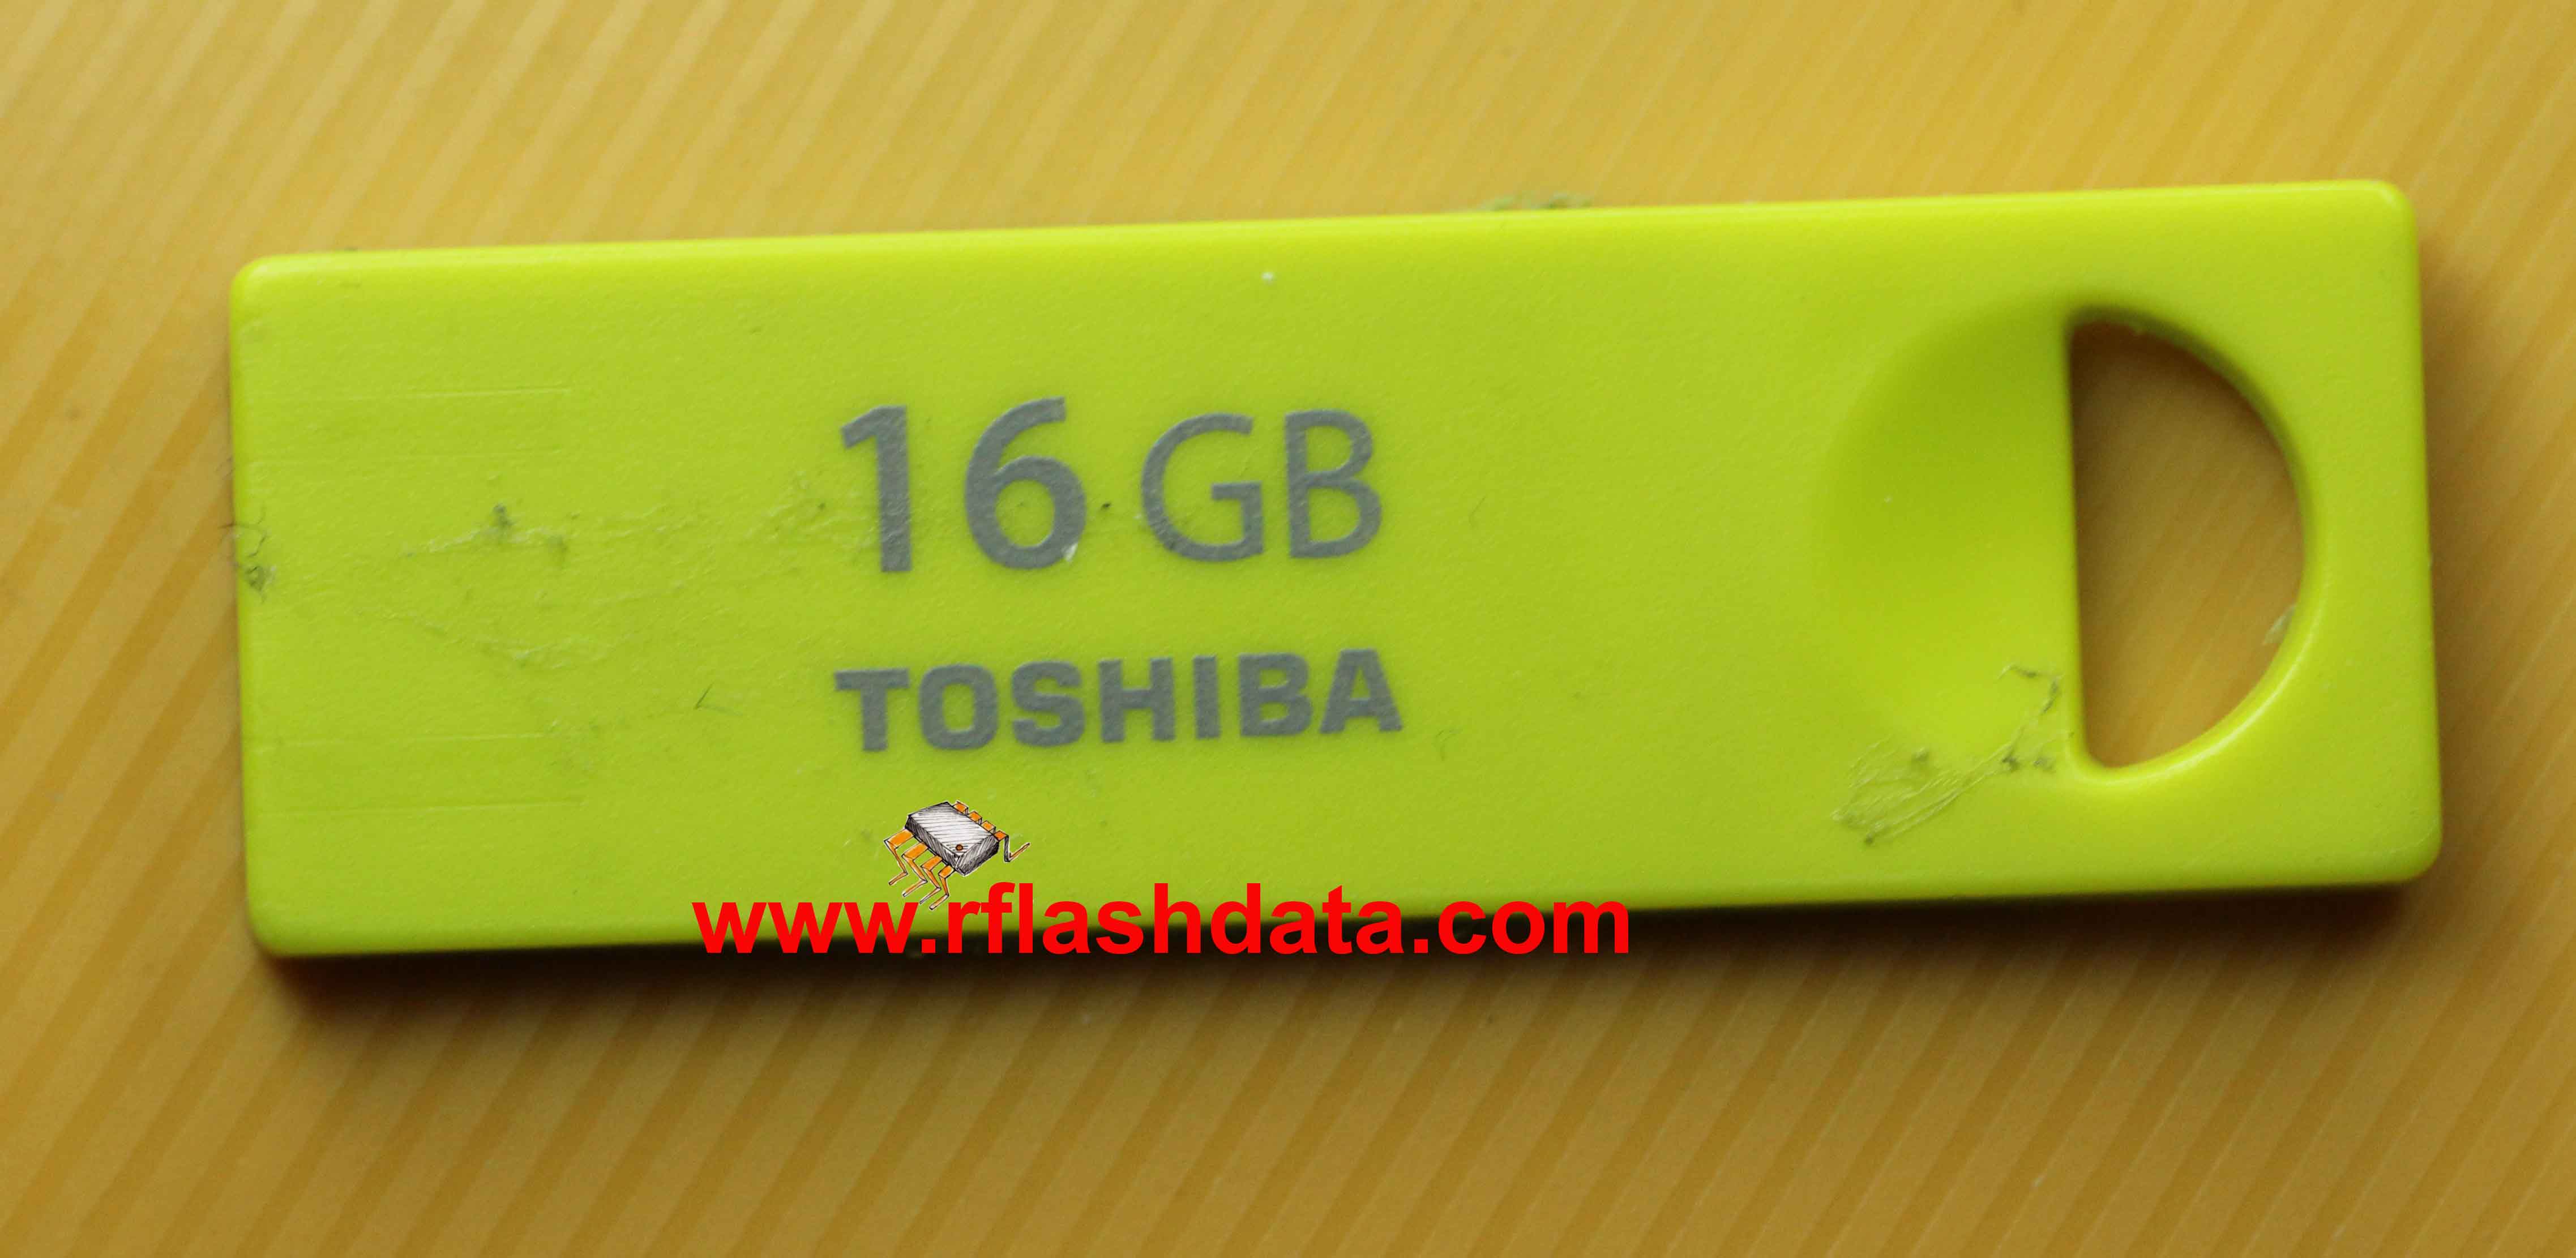 Toshiba flash drive